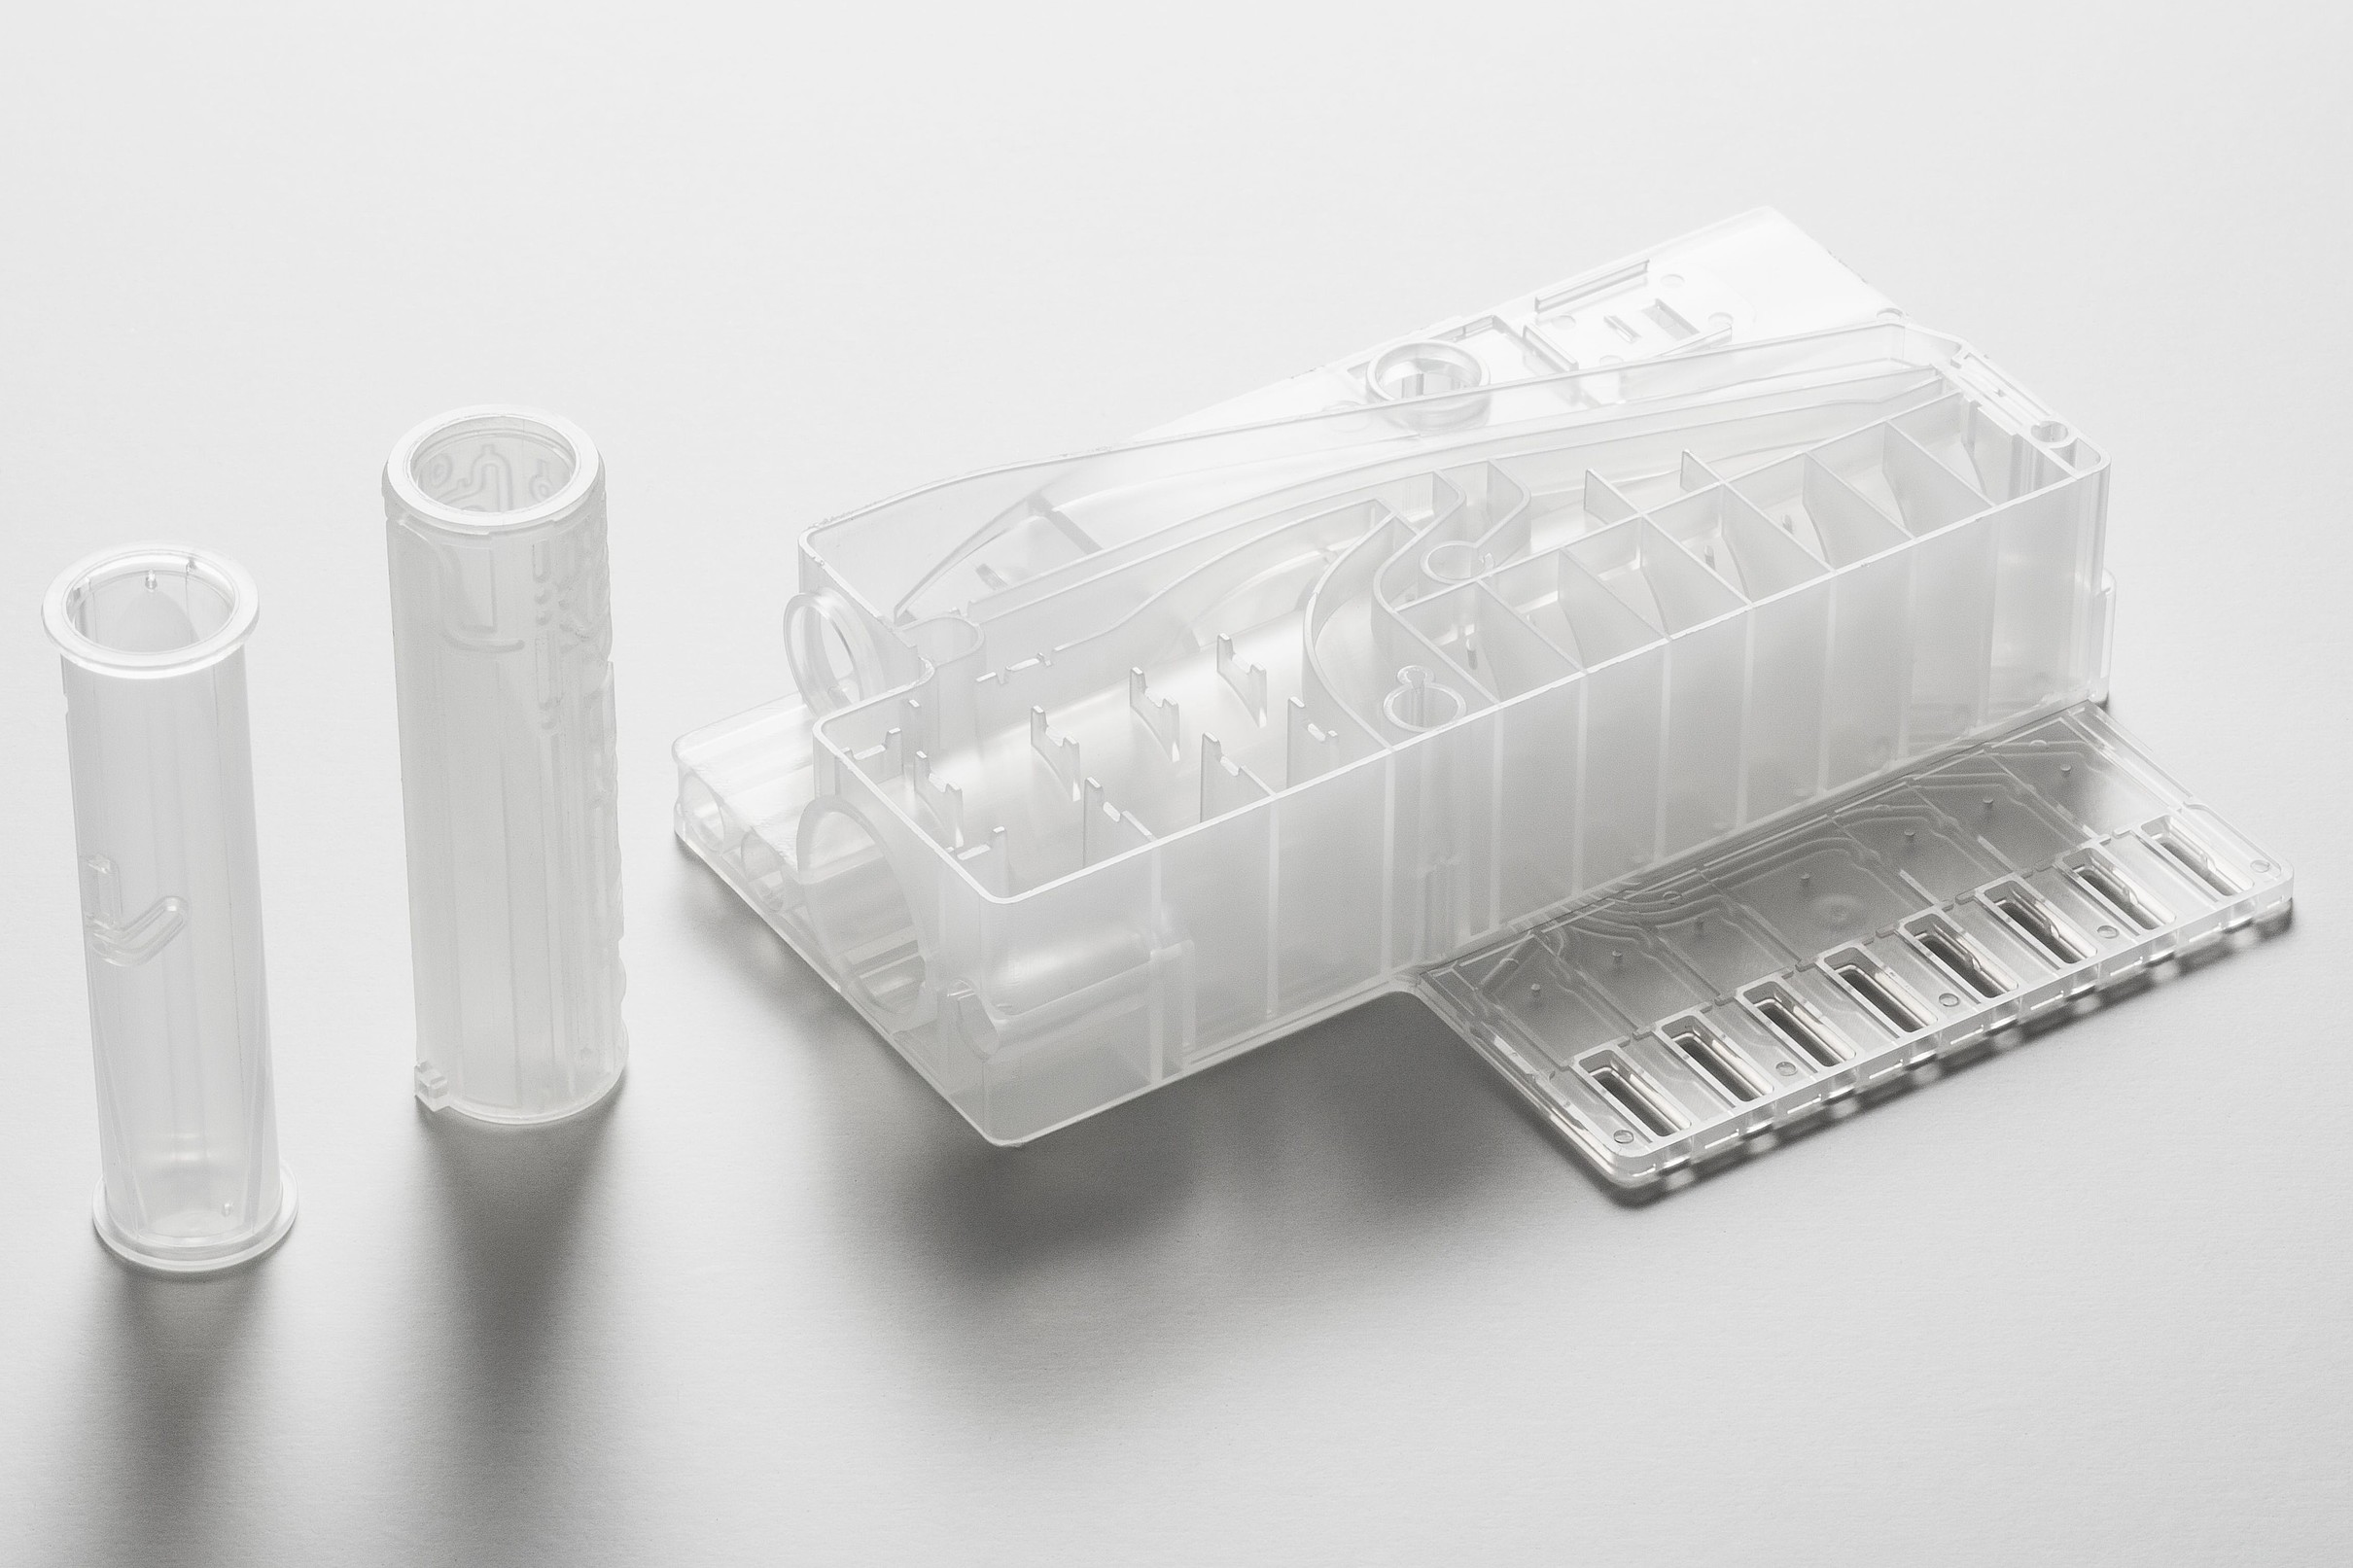 transparente Spritzgussteile für die Entwicklung eines Geräts zur In-vitro-Diagnostik